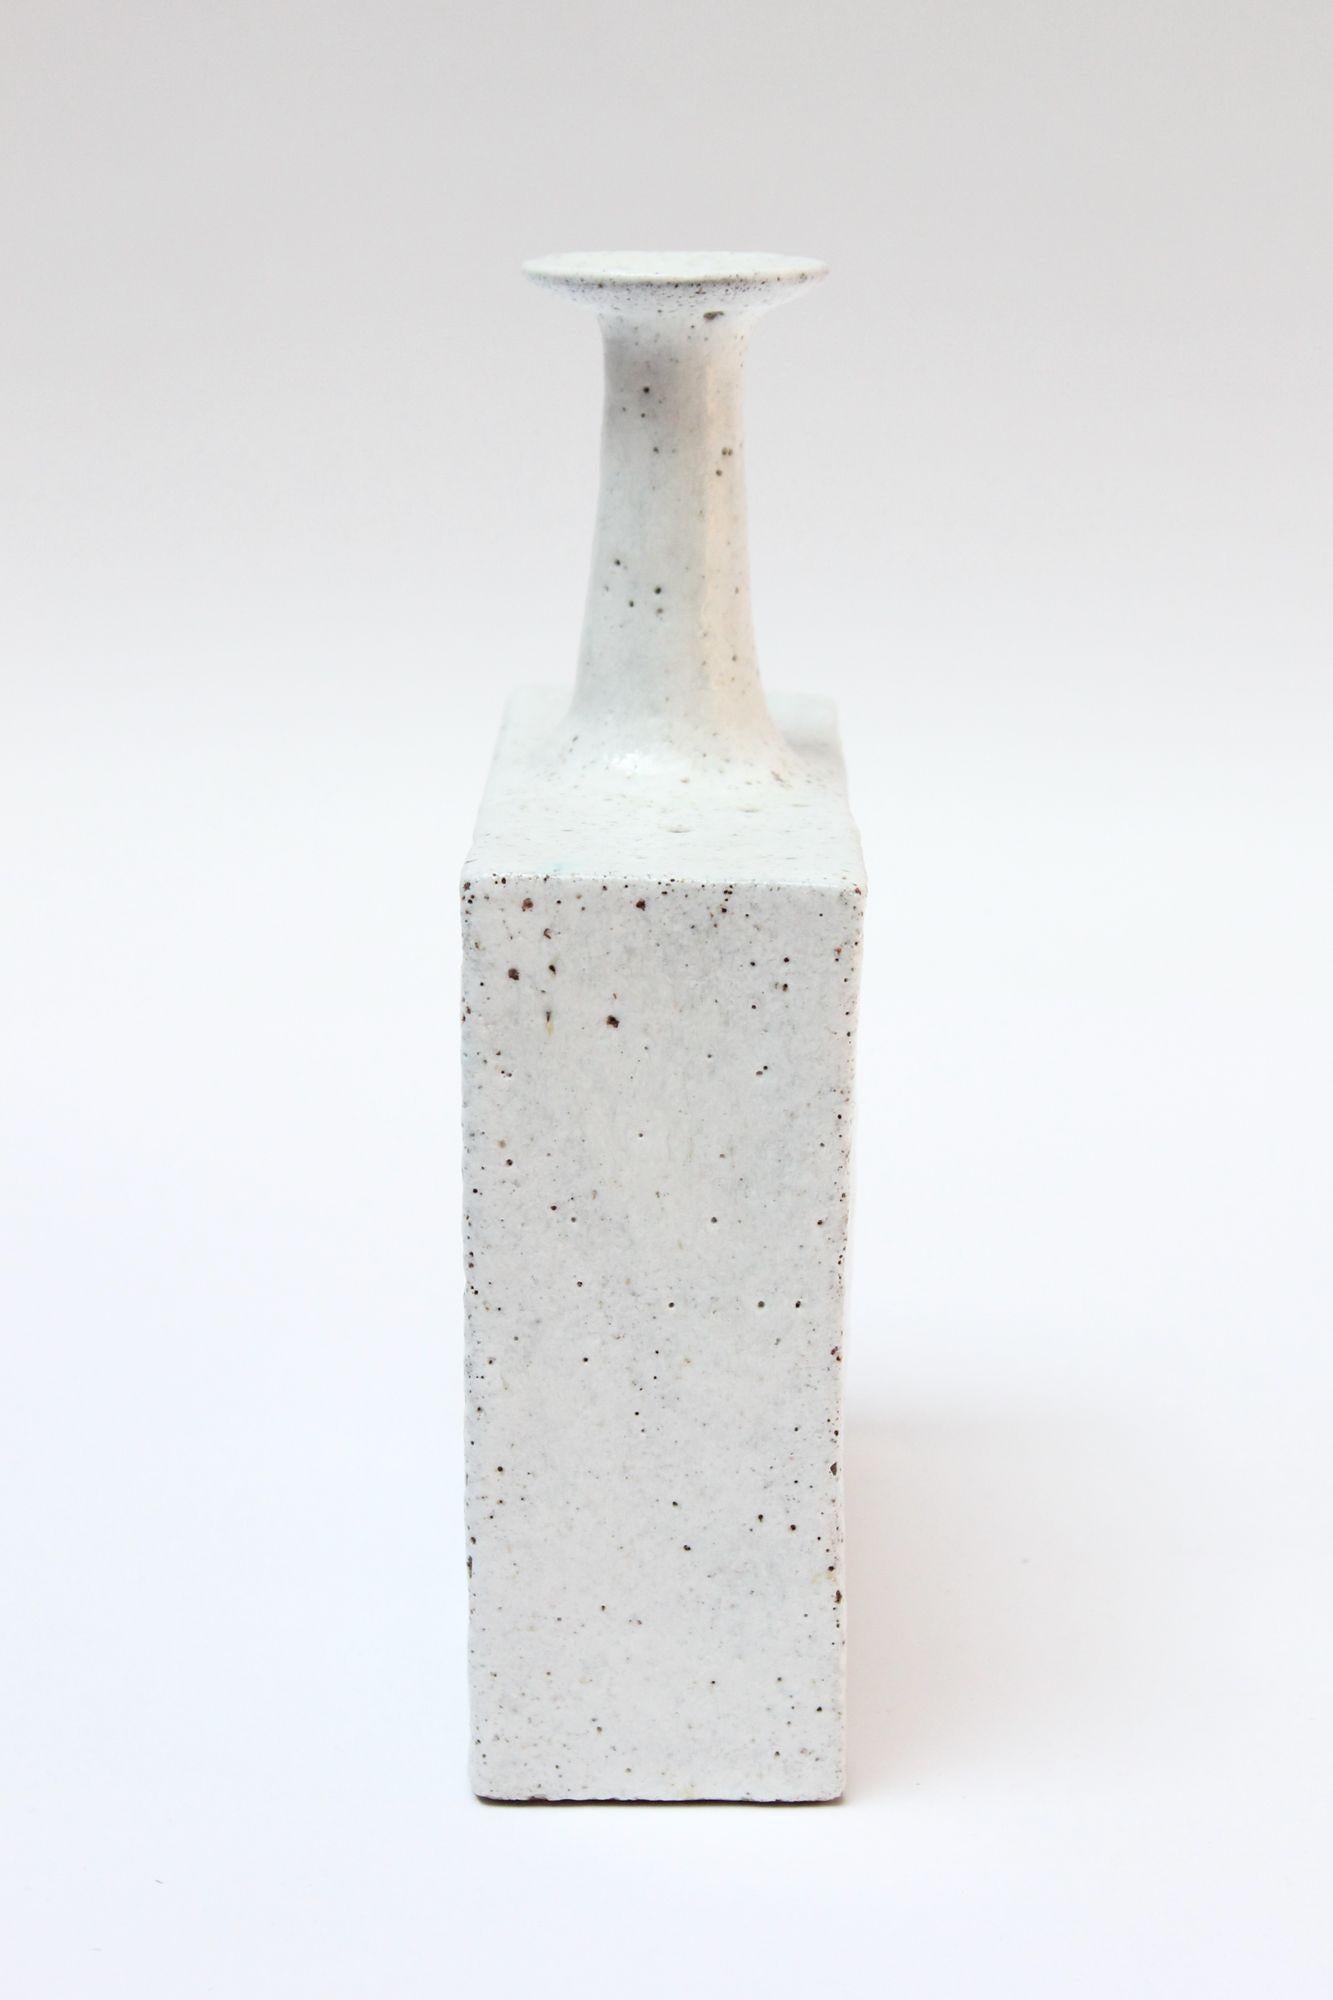 Moderne Vase aus italienischem Steinzeug von Bruno Gambone mit rechteckigem Sockel, der einen eleganten, konisch zulaufenden Hals und eine ausgestellte Öffnung trägt (ca. Ende der 1950er Jahre, Italien). Weiße Glasur mit türkisfarbenen Flecken an